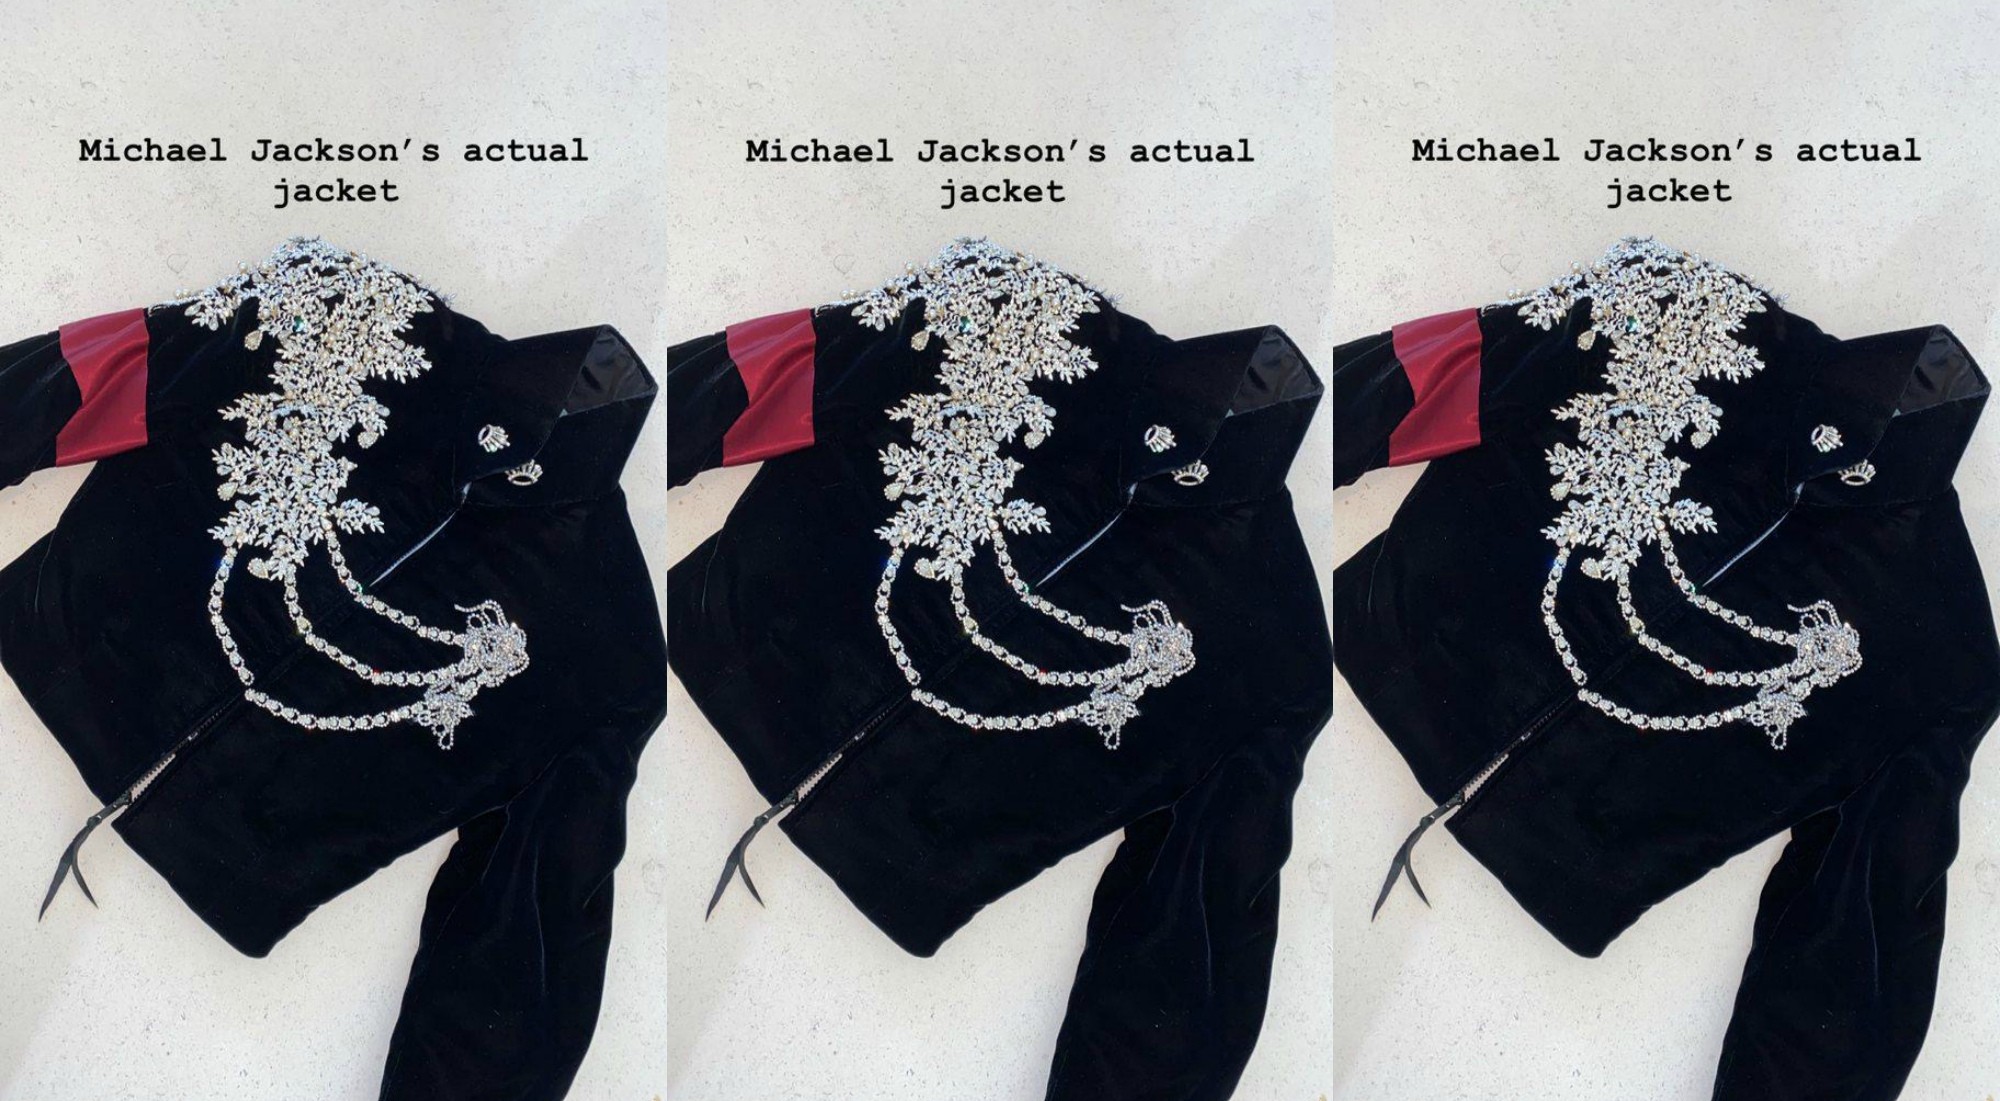 Ким Кардашьян подарила одной из дочерей коллекционный пиджак Майкла Джексона